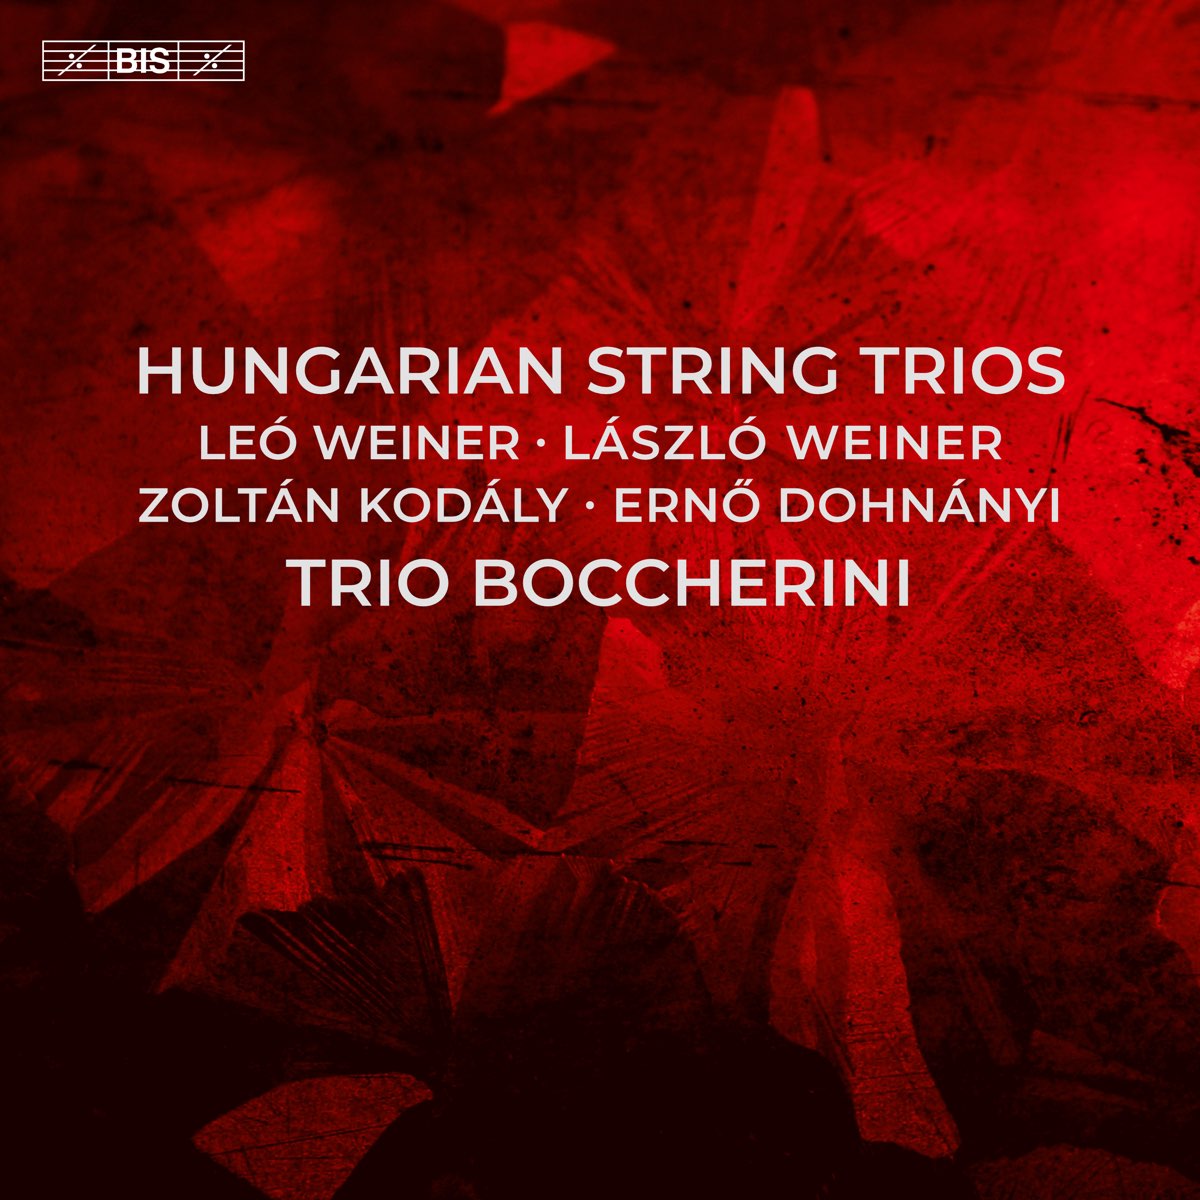 ‎Hungarian String Trios - Album by Trio Boccherini - Apple Music